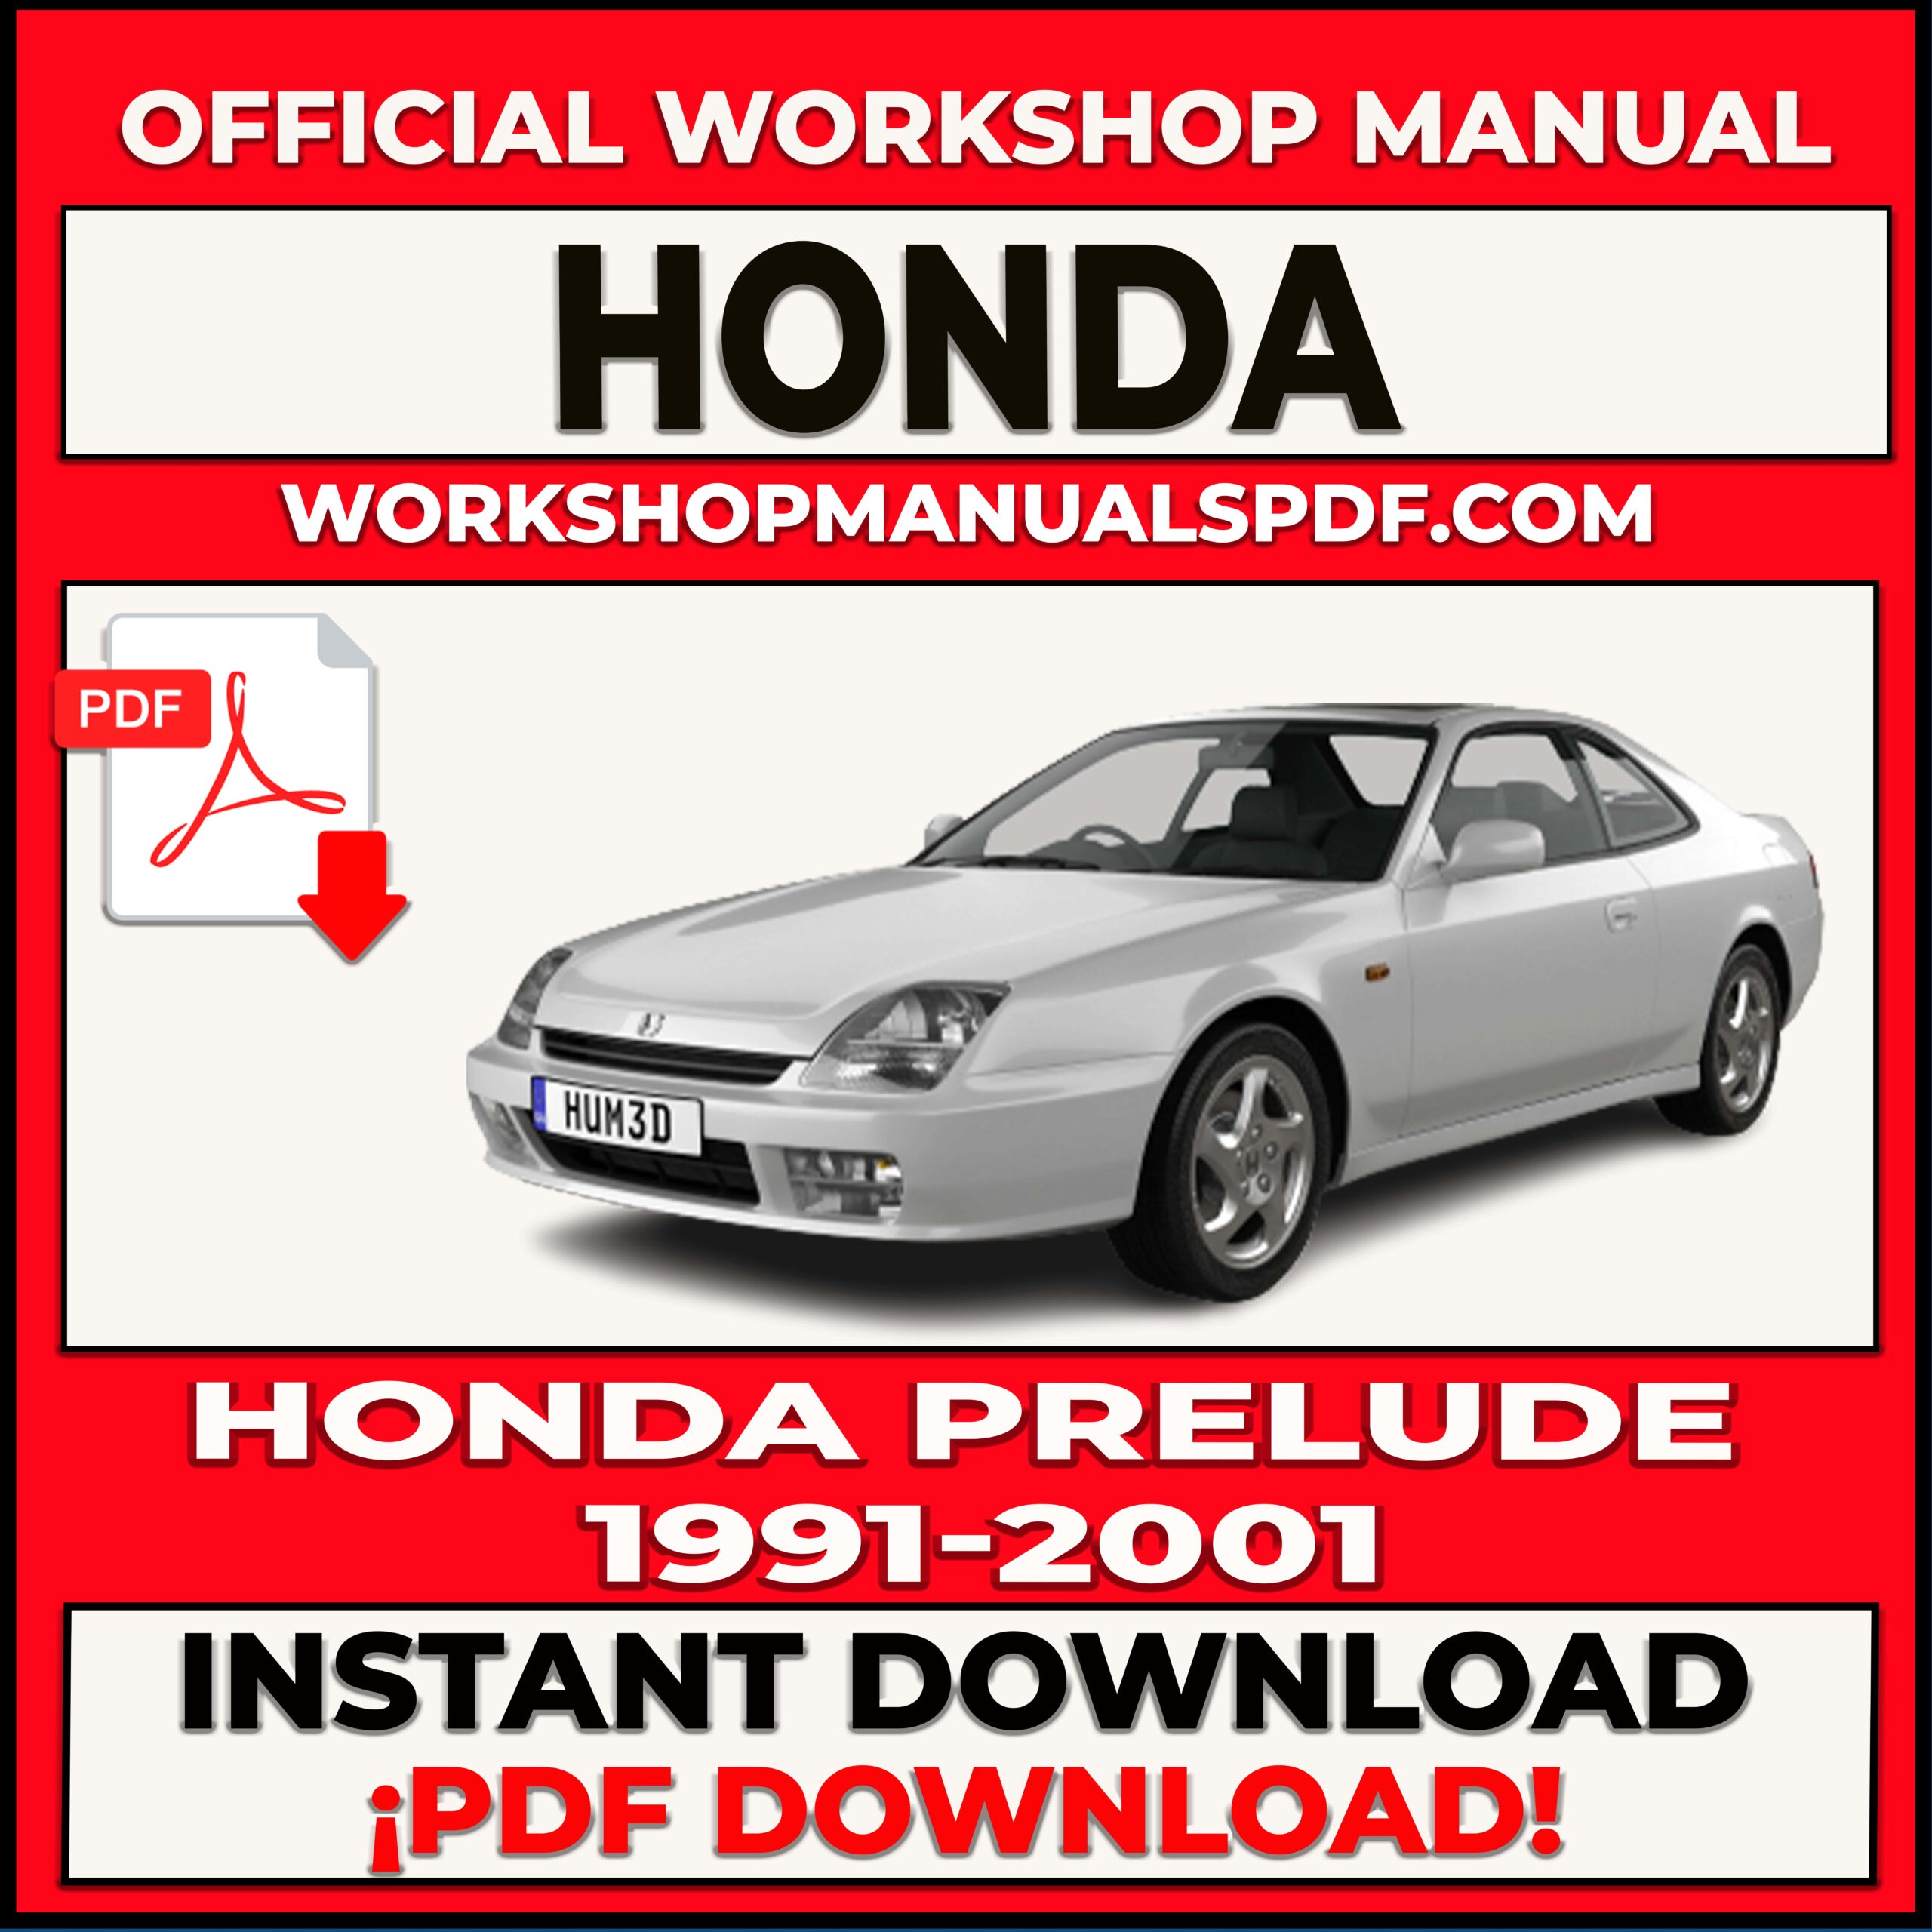 Honda Prelude 1991-2001 Workshop Repair Manual